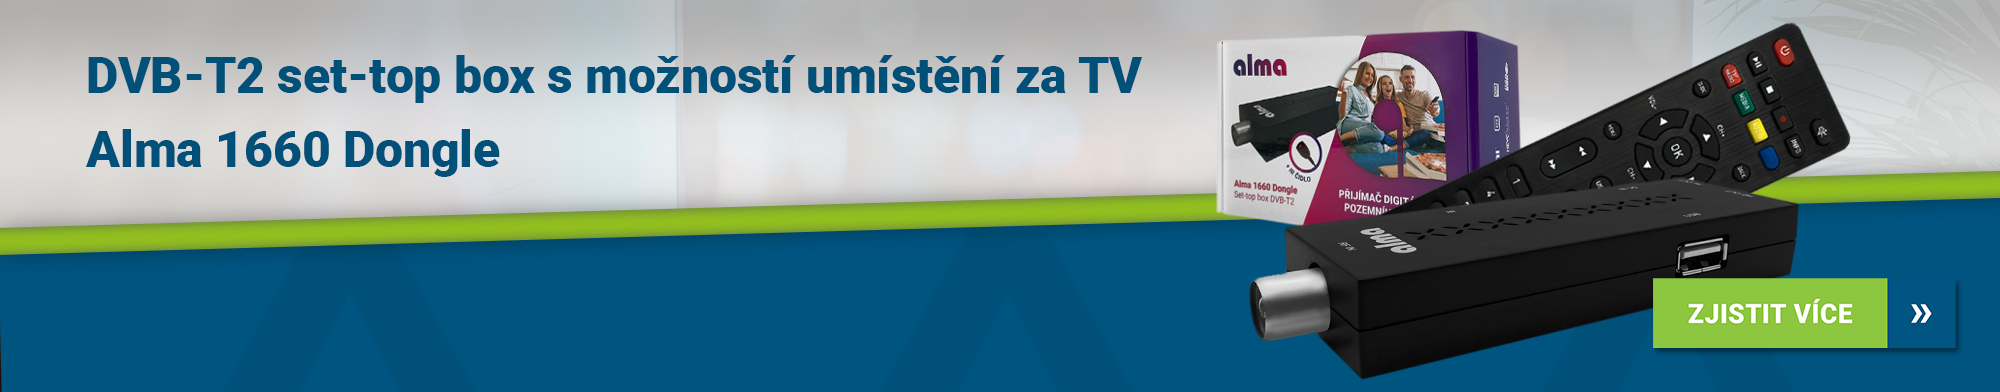 DVB-T2 set-top box Alma 1660 Dongle s možností umístění za TV